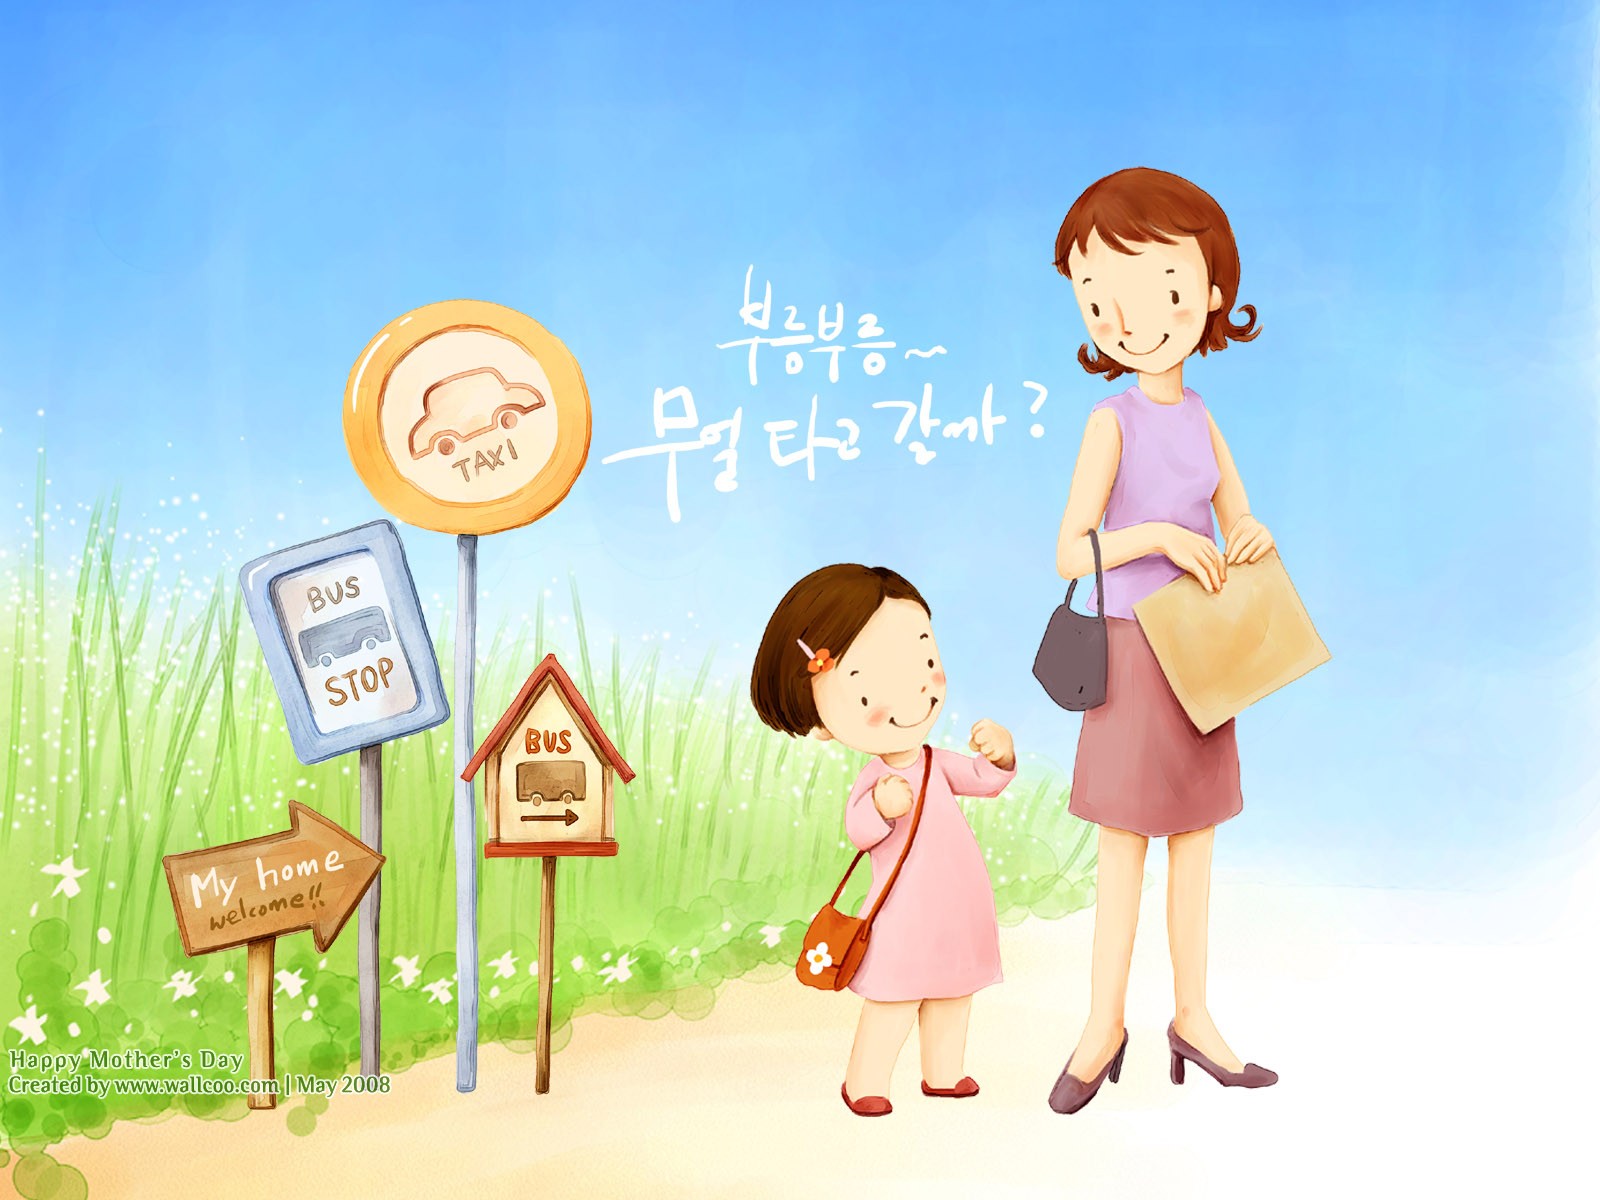 韓国イラストレーターの壁紙の母の日のテーマ #1 - 1600x1200